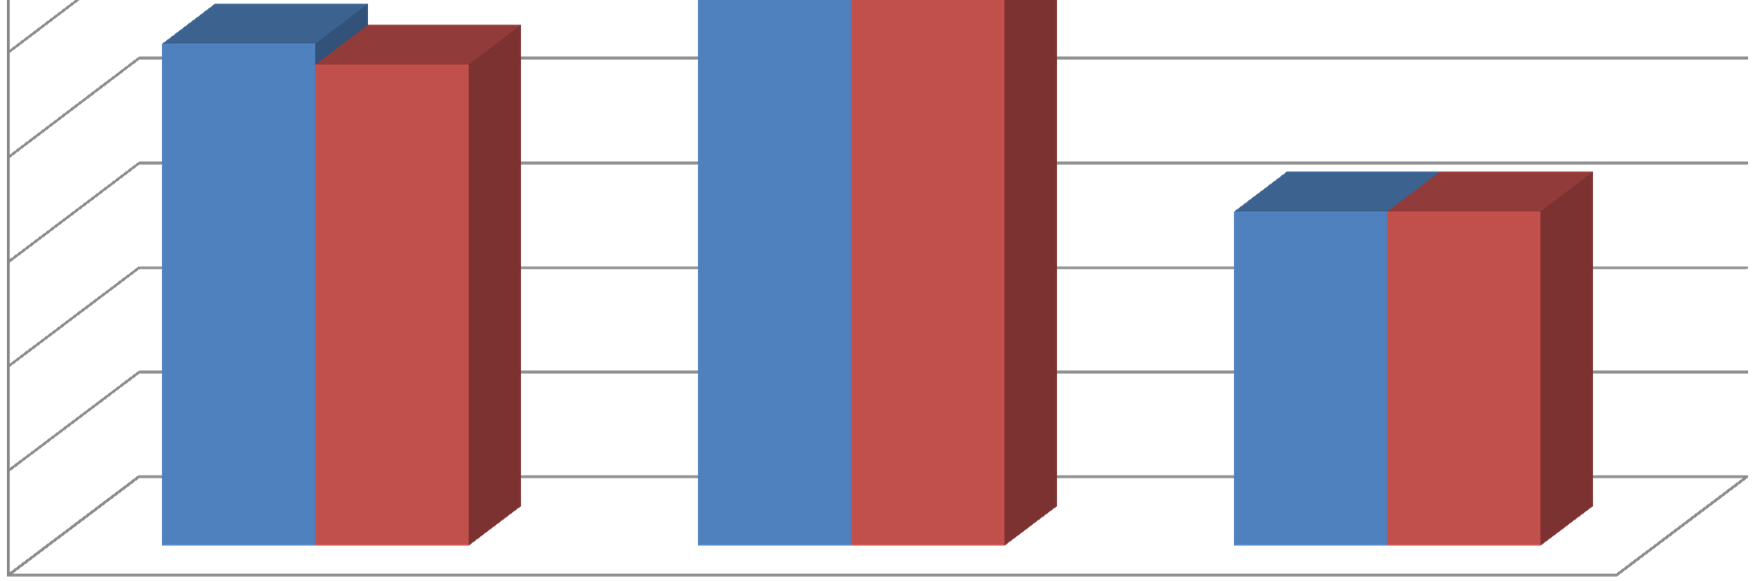 Piilolinssien käyttökustannukset Q1-Q4, 2012 /kk +4,4% 50 46 45 42 40 35 30 25